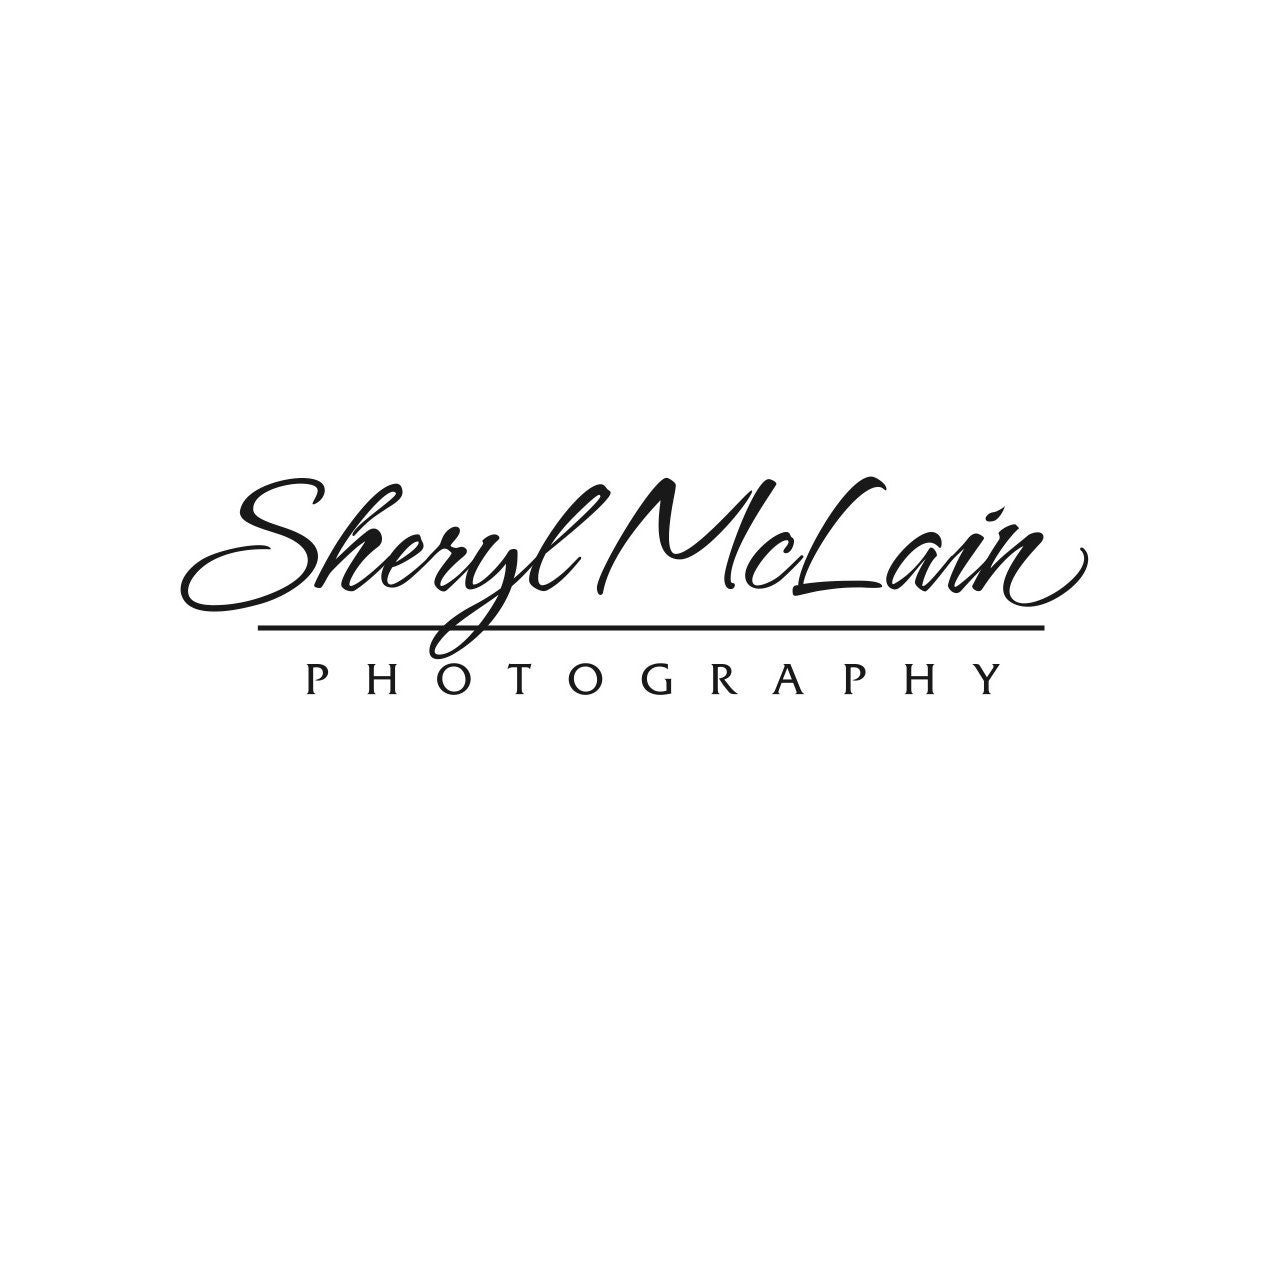 McLainPhotographyArt | Etsy